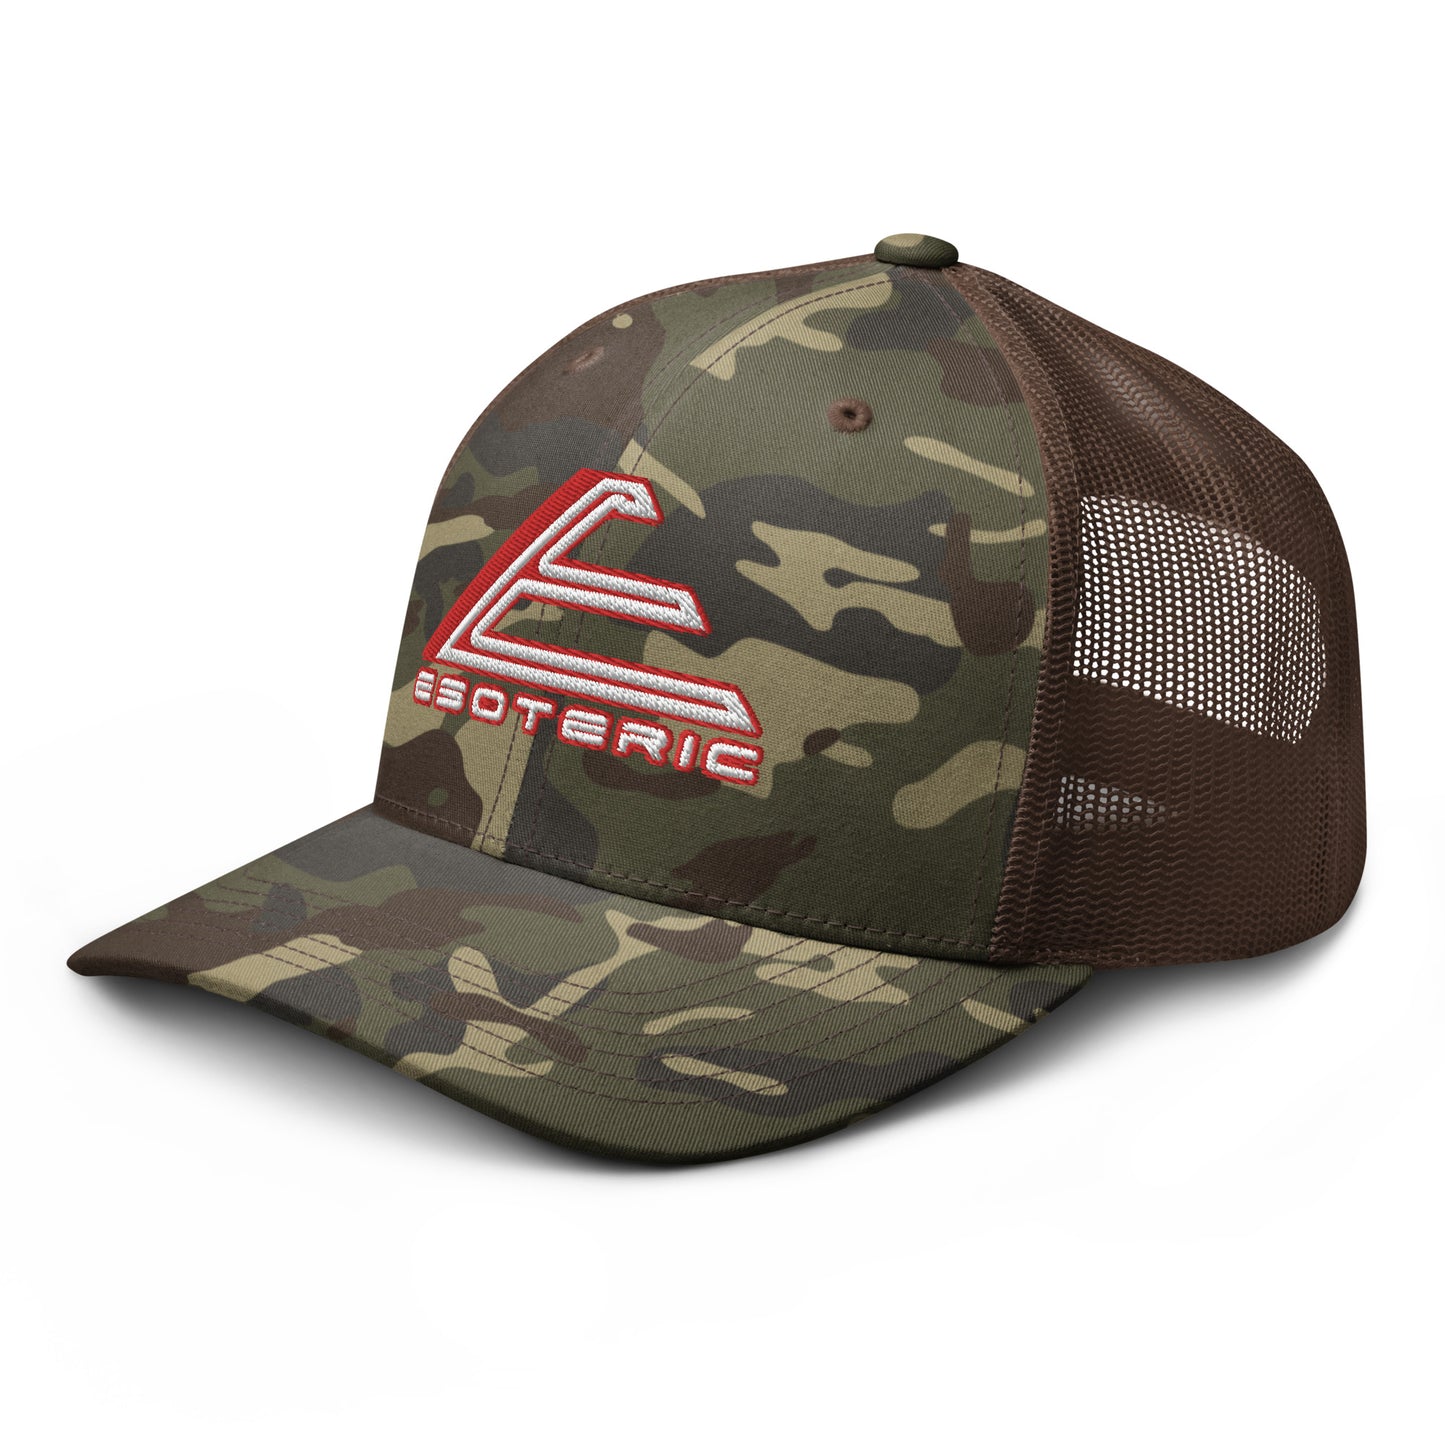 Logo Camouflage trucker hat